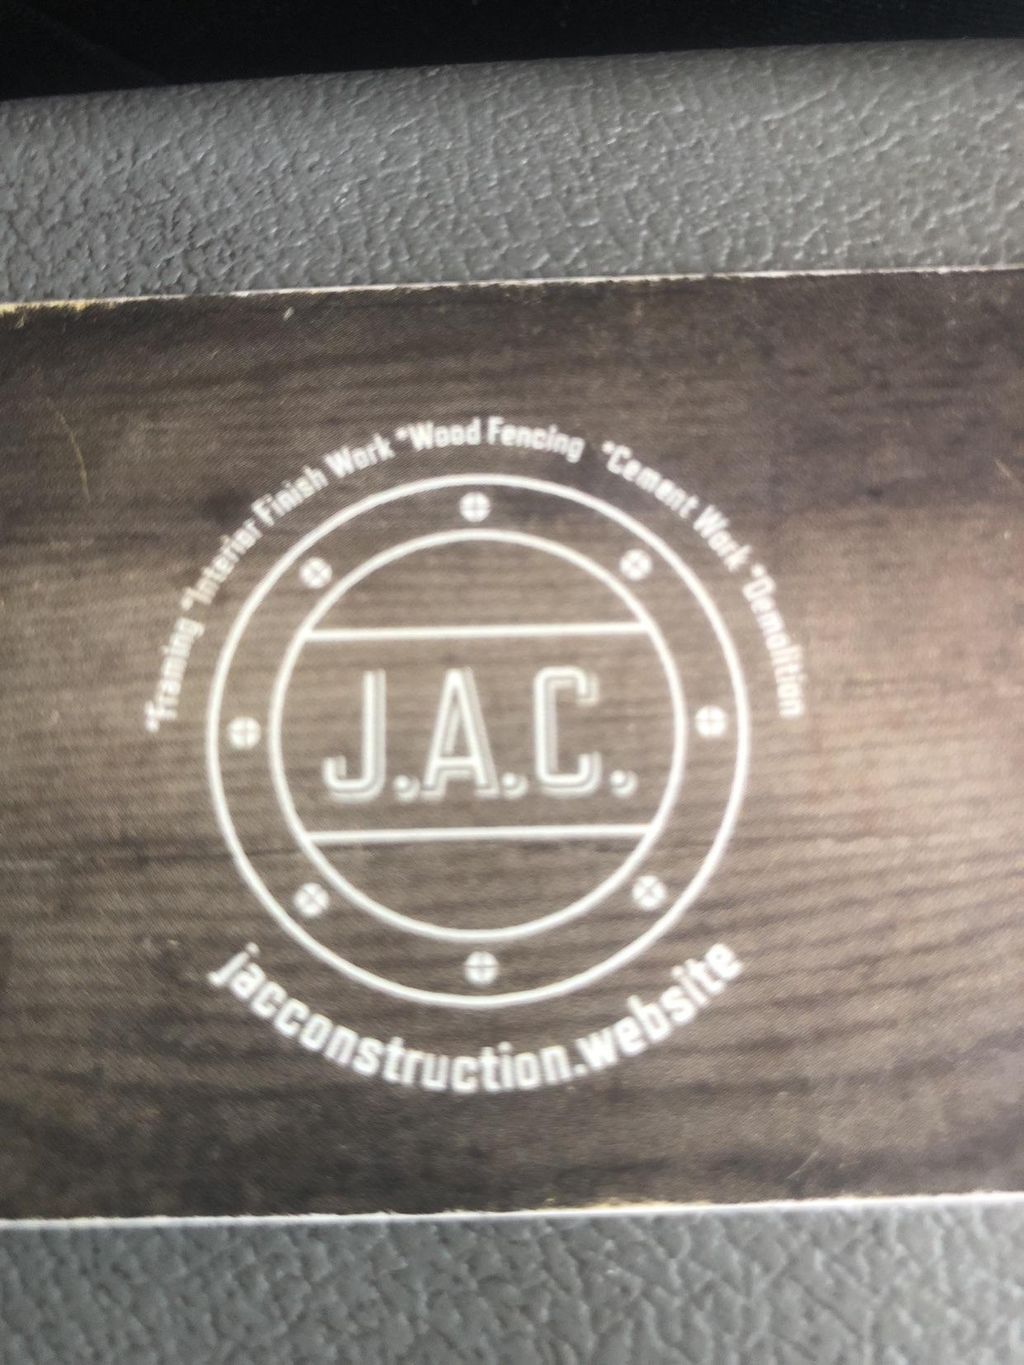 J.A.C. Construction